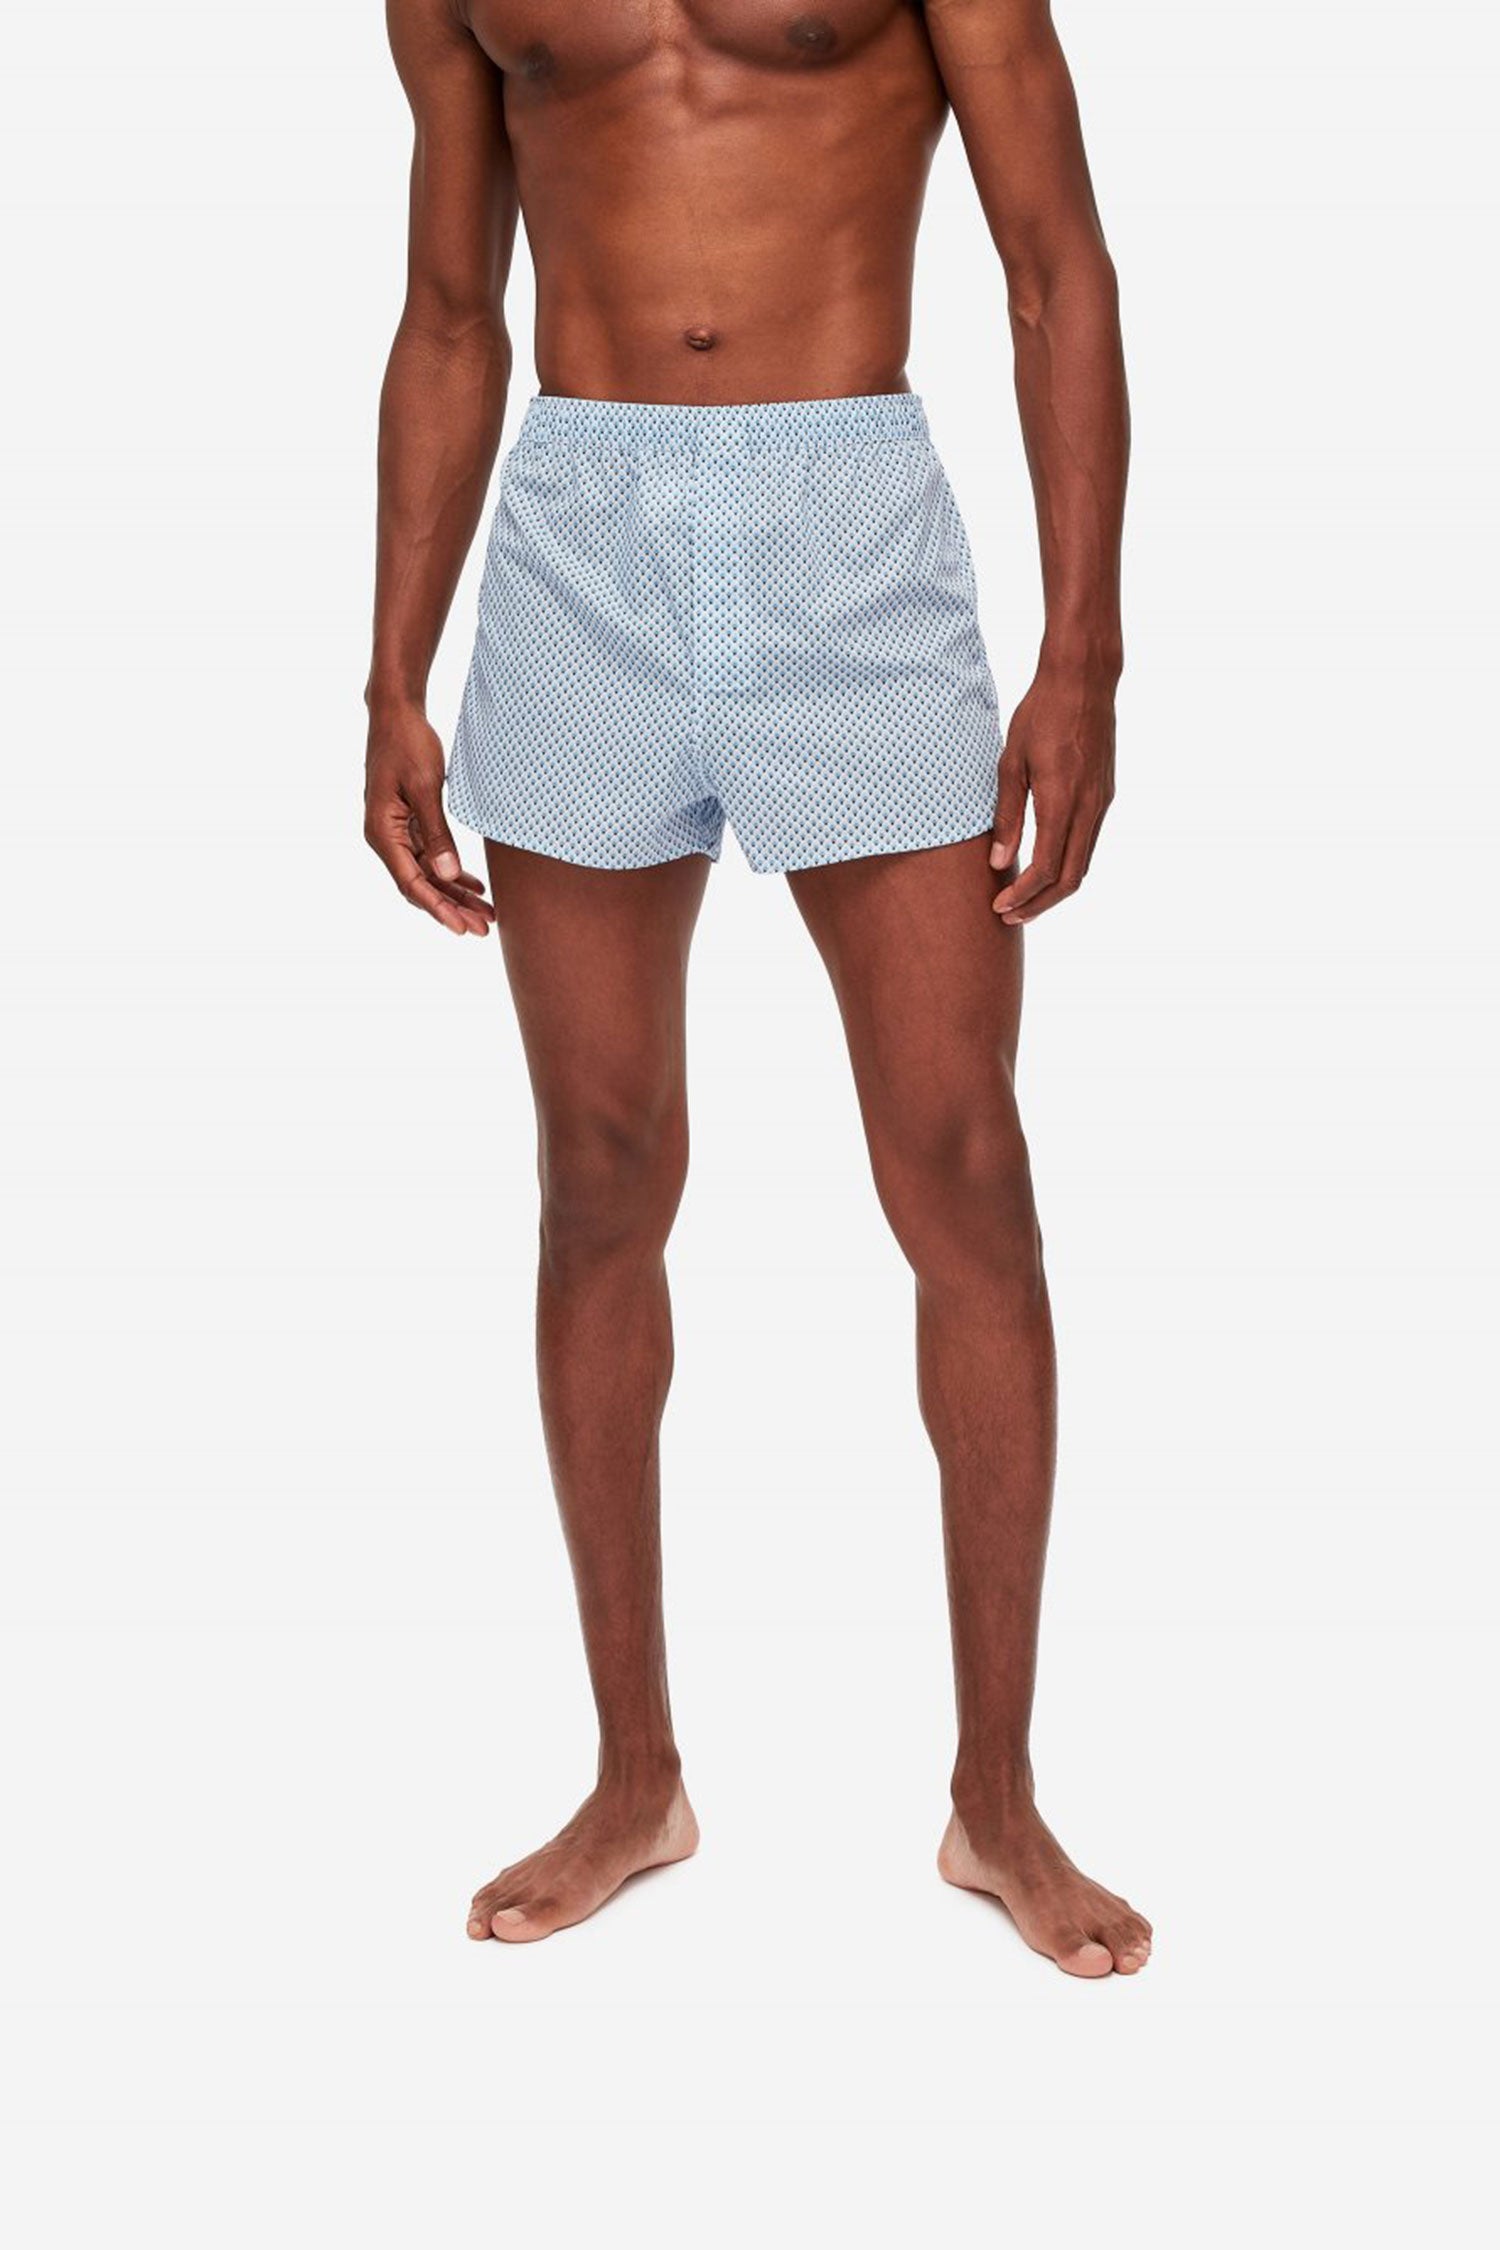 DEREK ROSE Amalfi Cotton Boxer Shorts for Men